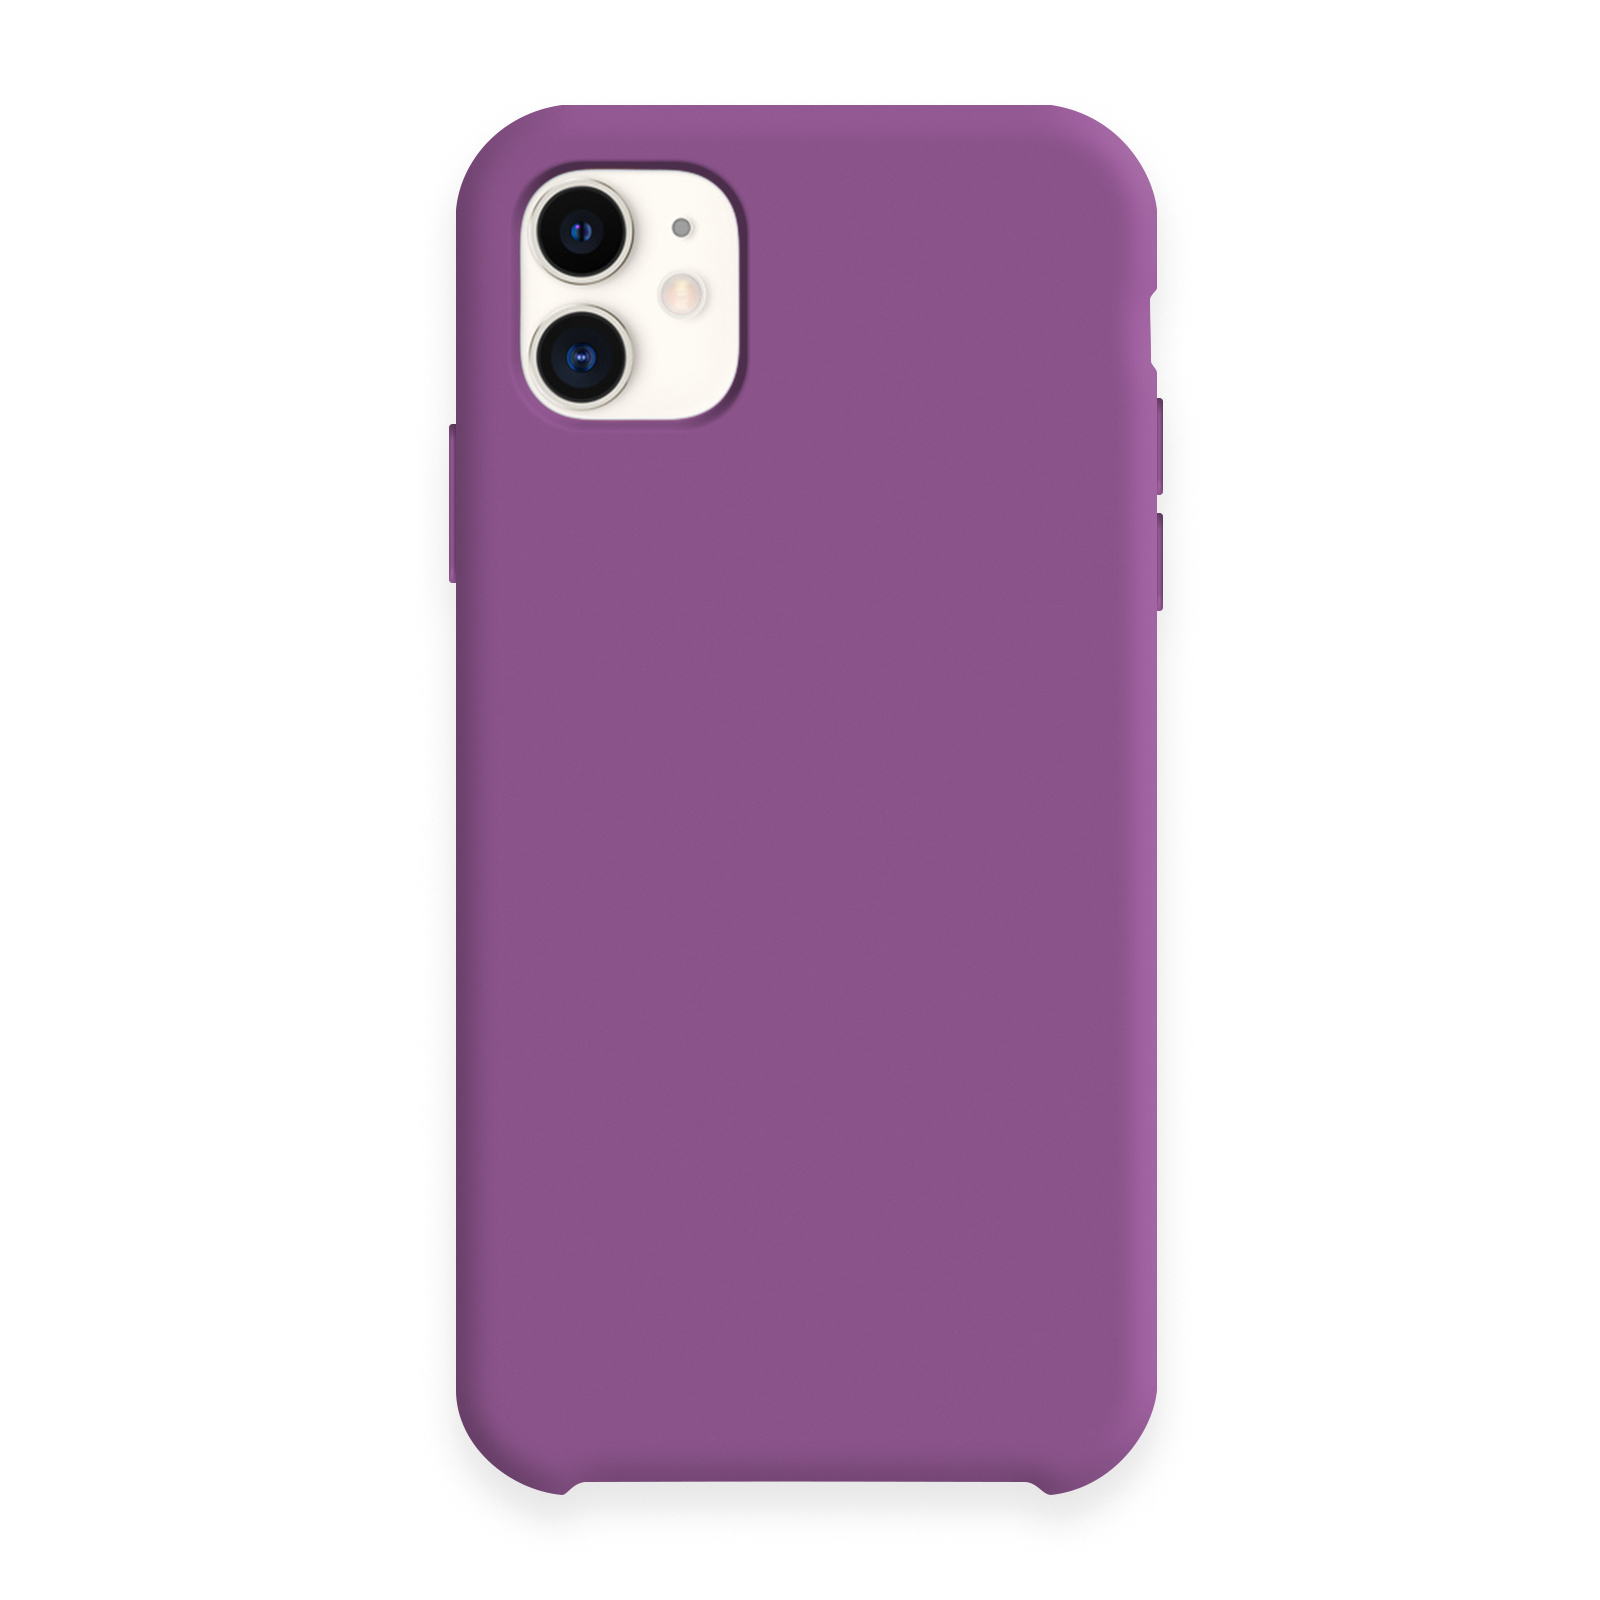 Iphone чехлы фиолетовые. Чехол Apple iphone 11 Silicone Case. Apple Silicone Case iphone 11. Apple Silicon Case iphone 11 Purple. Silicon Case iphone 11.